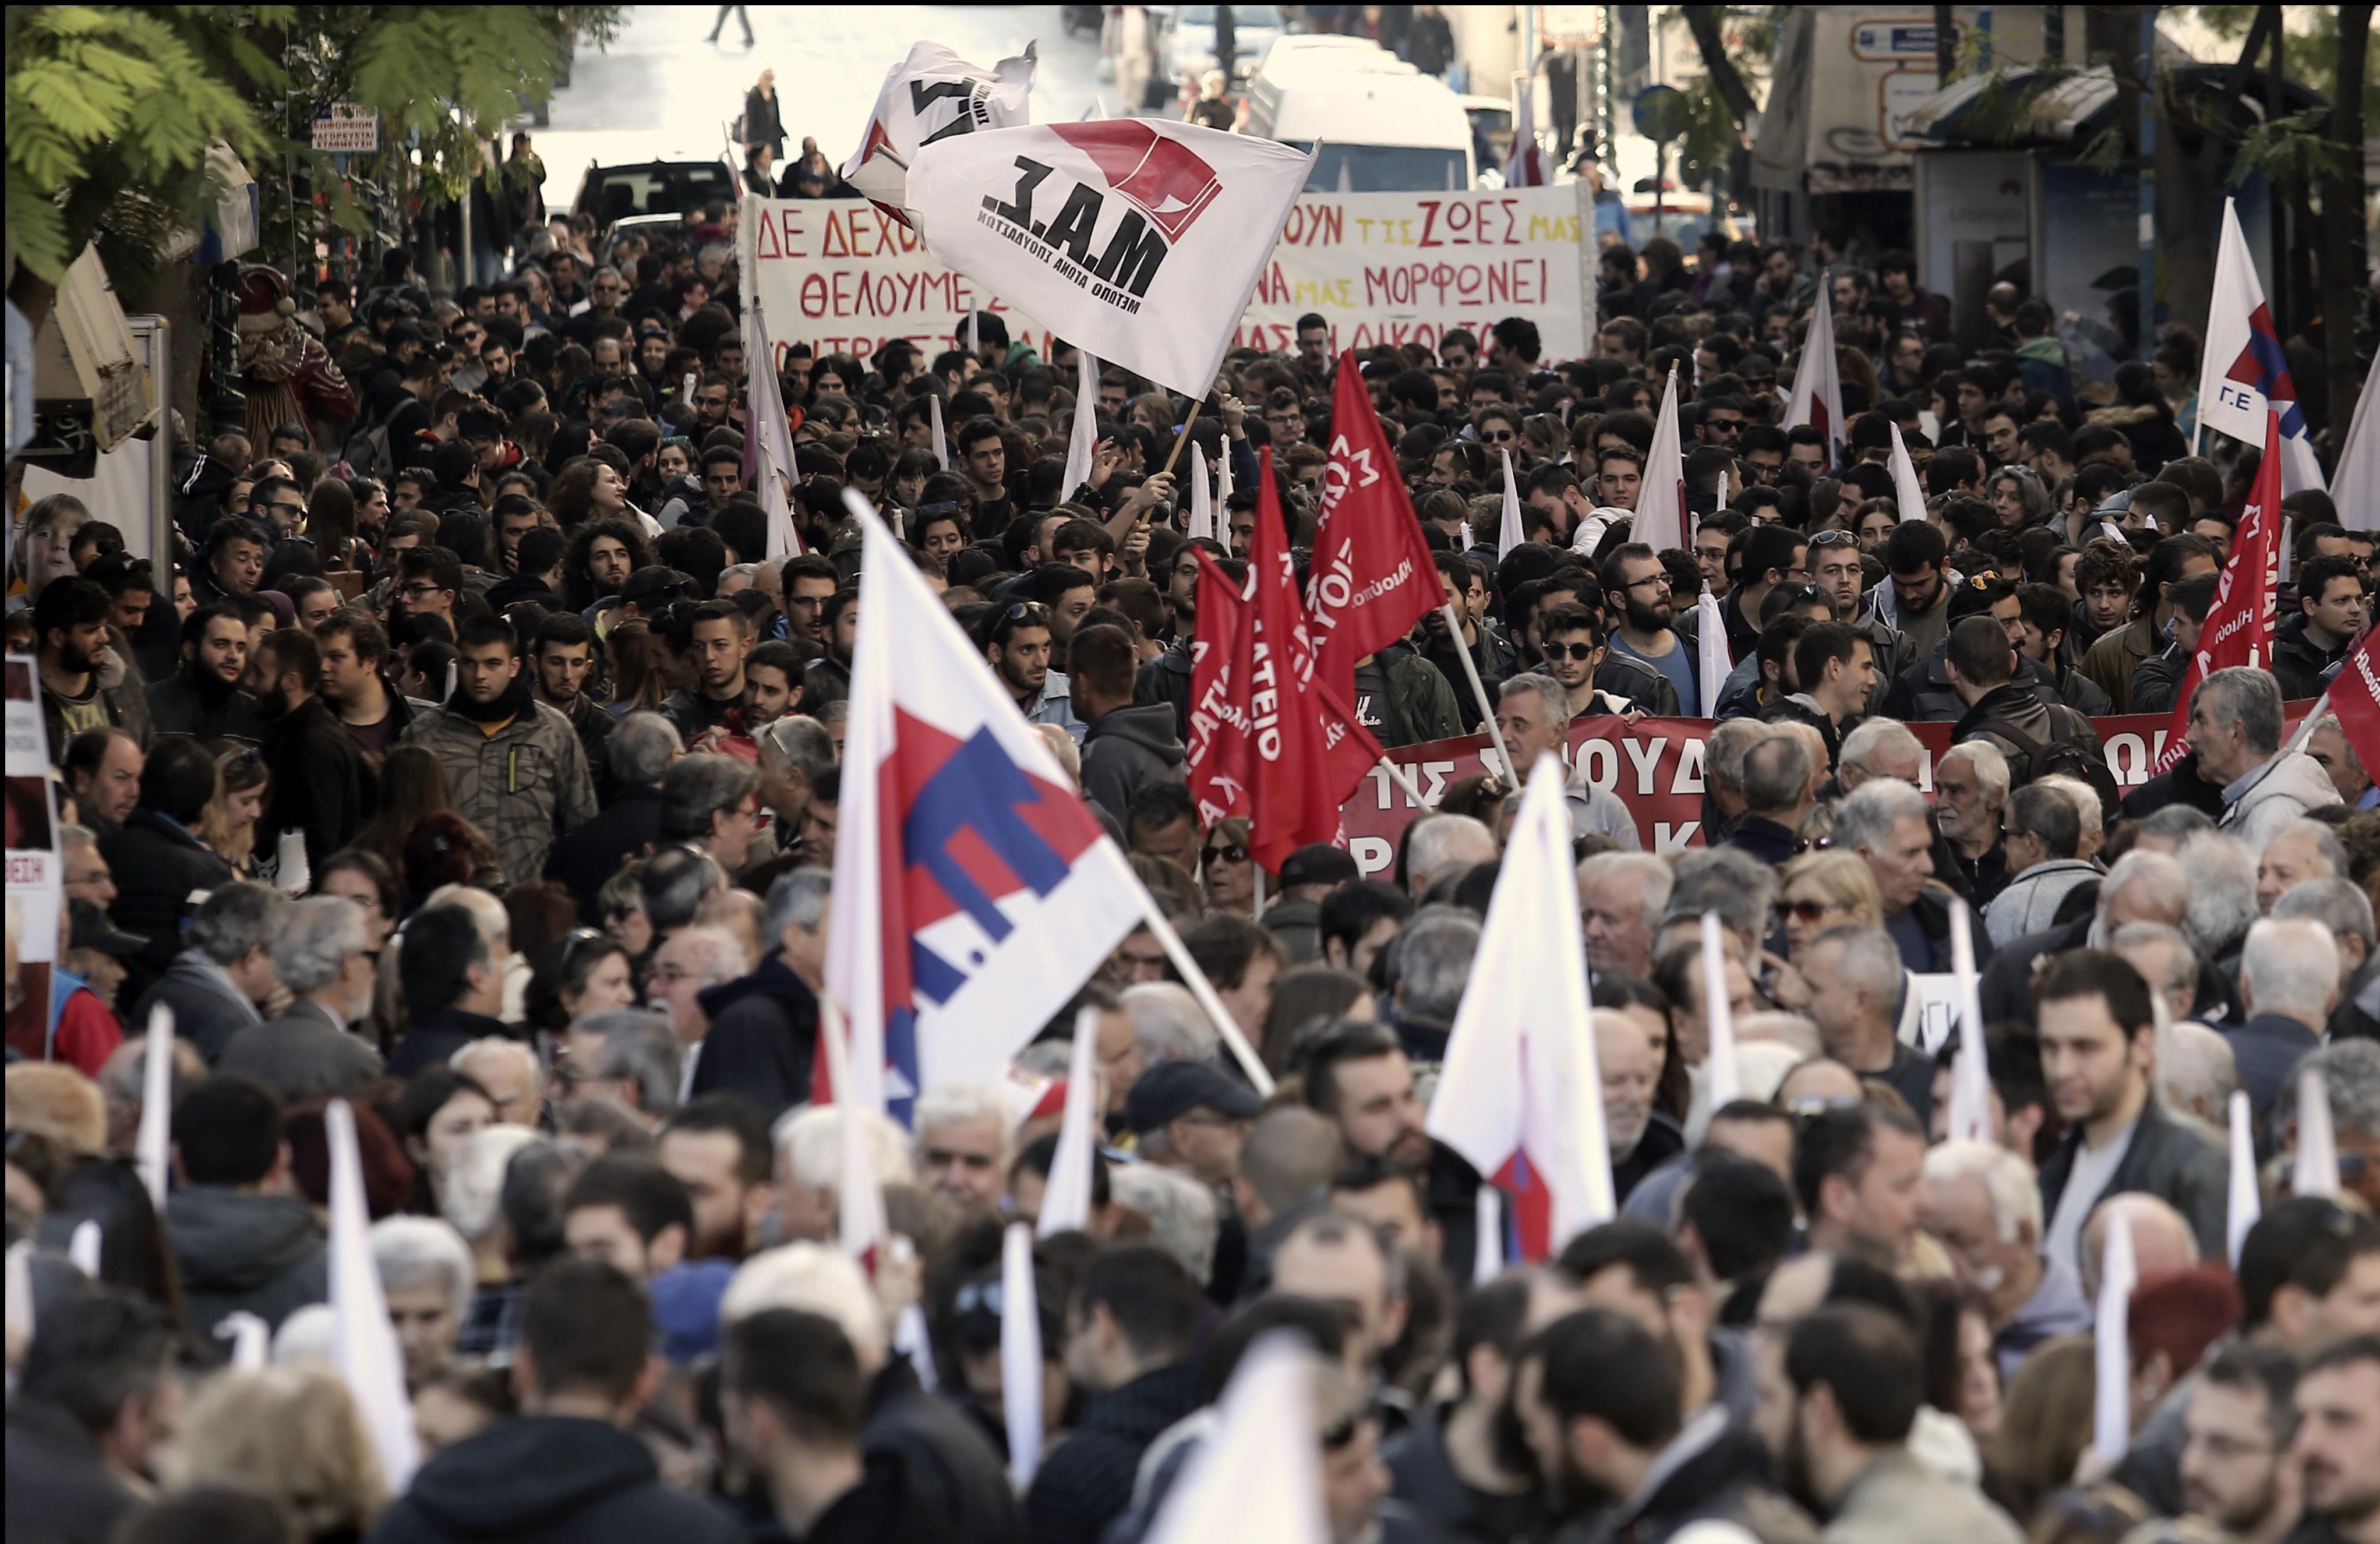 Ολοκληρώθηκαν τα απεργιακά συλλαλητήρια στο κέντρο της Αθήνας [Βίντεο]